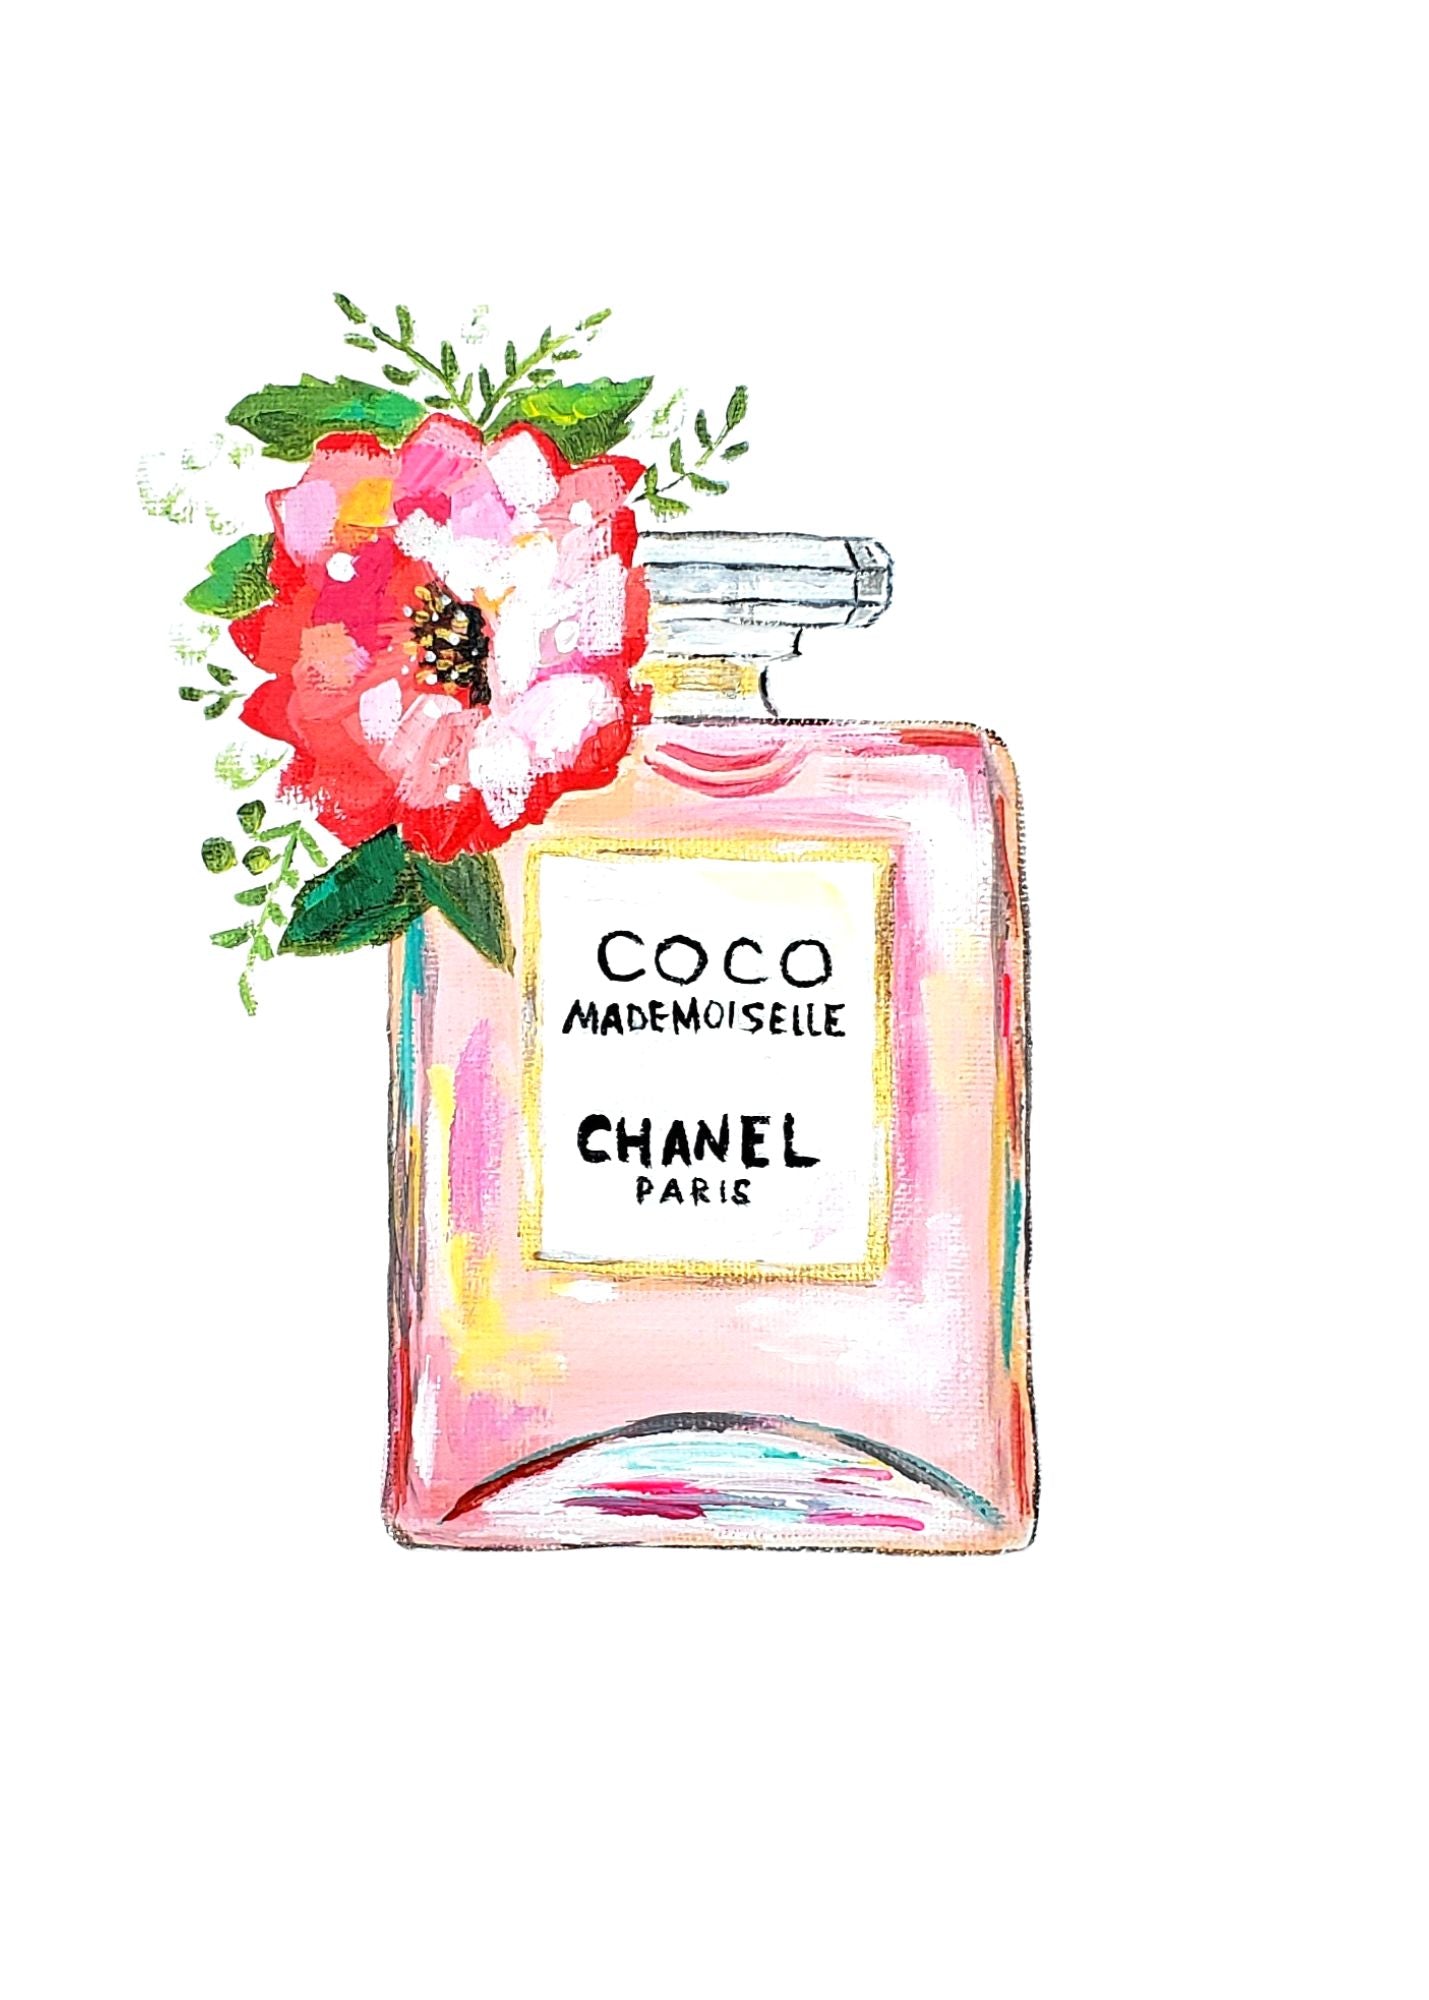 Coco Chanel – Michelle Dini Fine Art